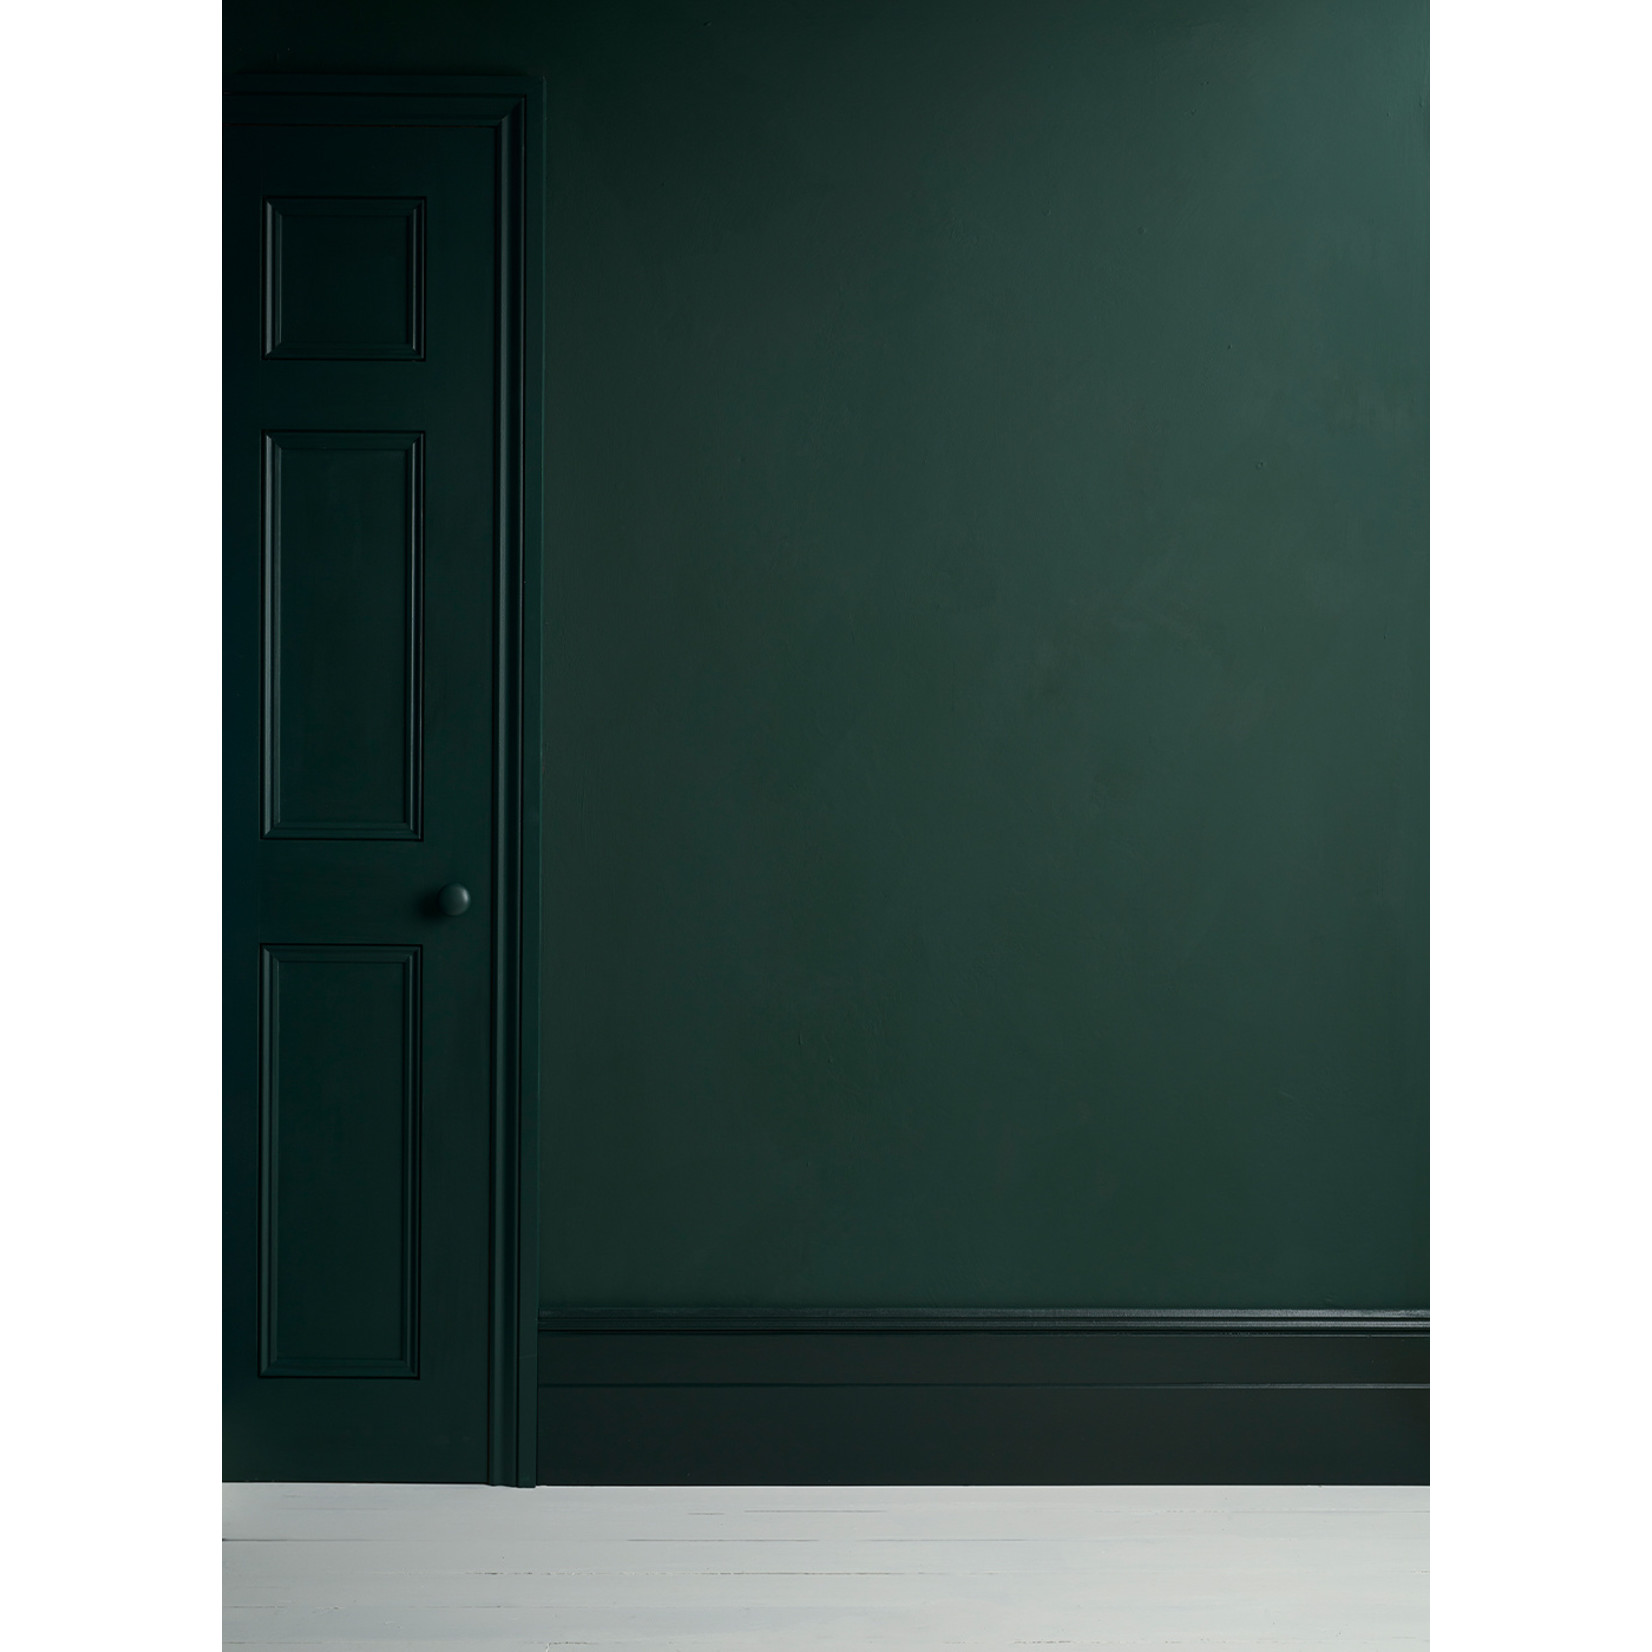 Annie Sloan Annie Sloan Knightsbridge Green Satin Paint 750ml